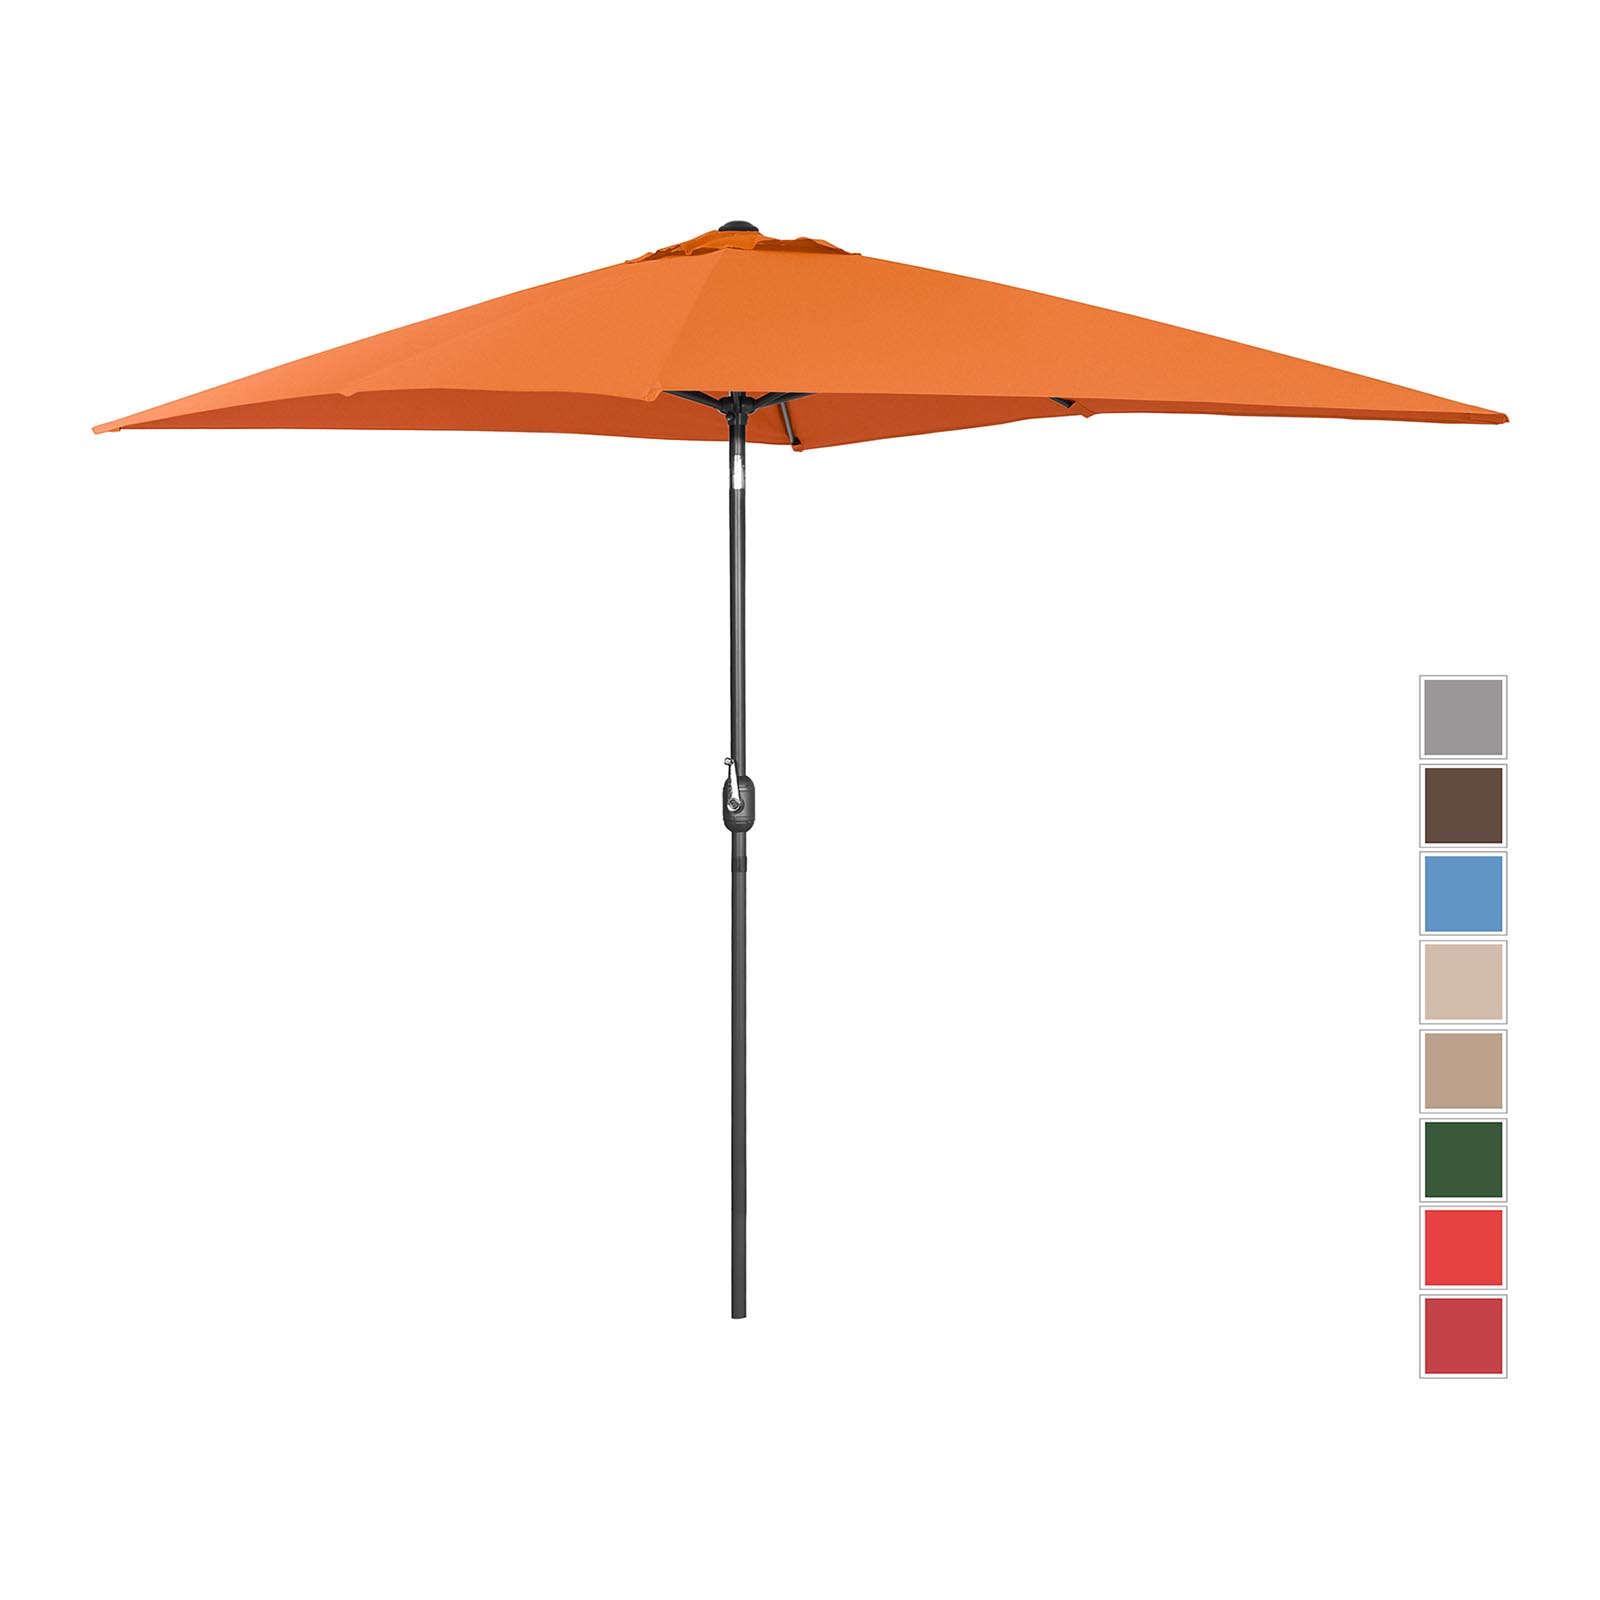 Sonnenschirm groß - orange - rechteckig - 200 x 300 cm - neigbar